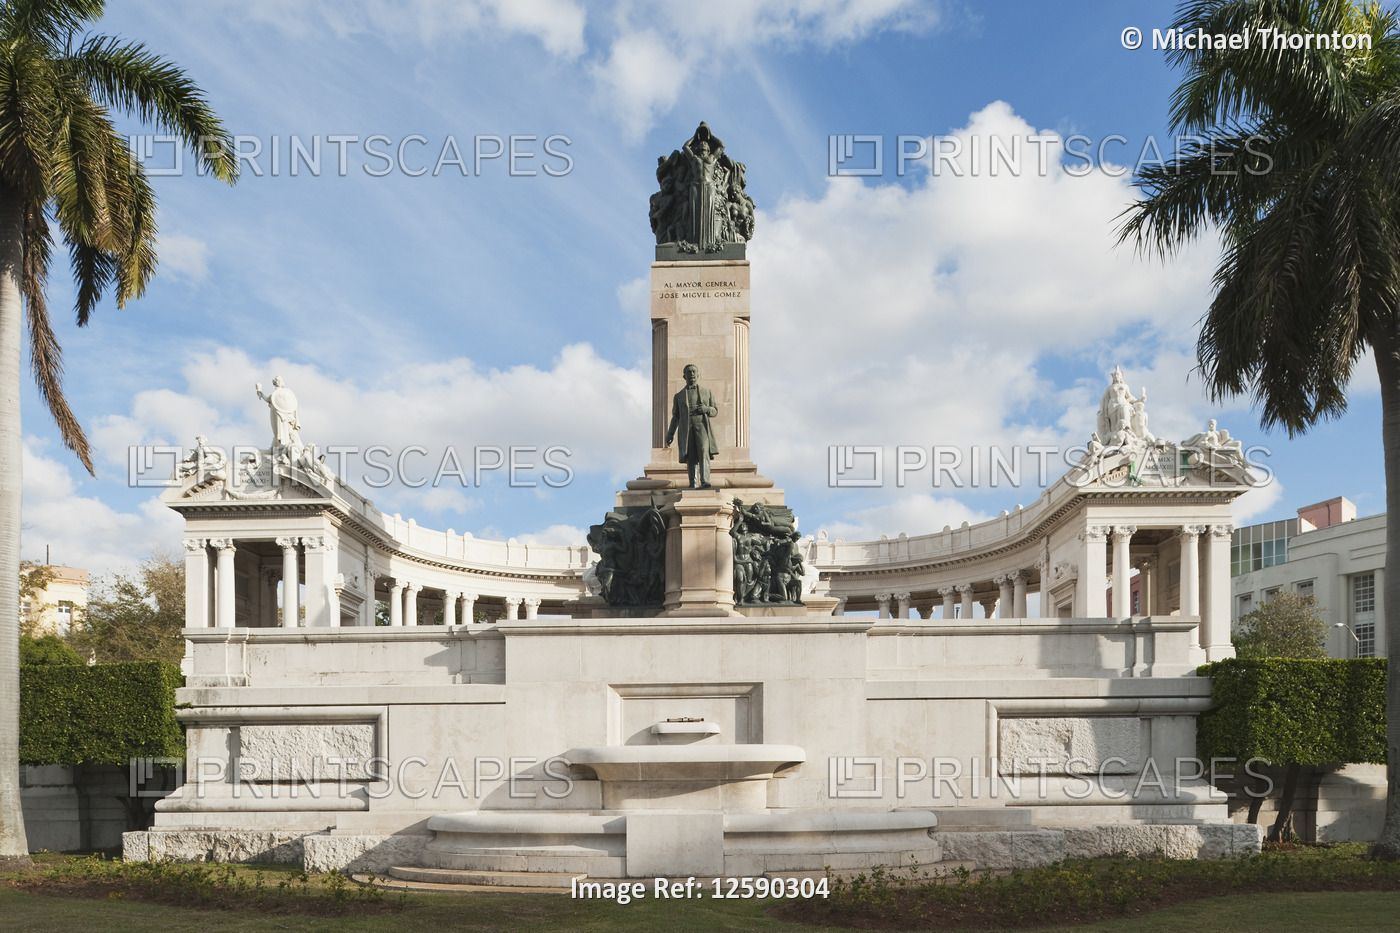 Monumento al Mayor General, Jose Miguel Gomez, La Habana, Cuba